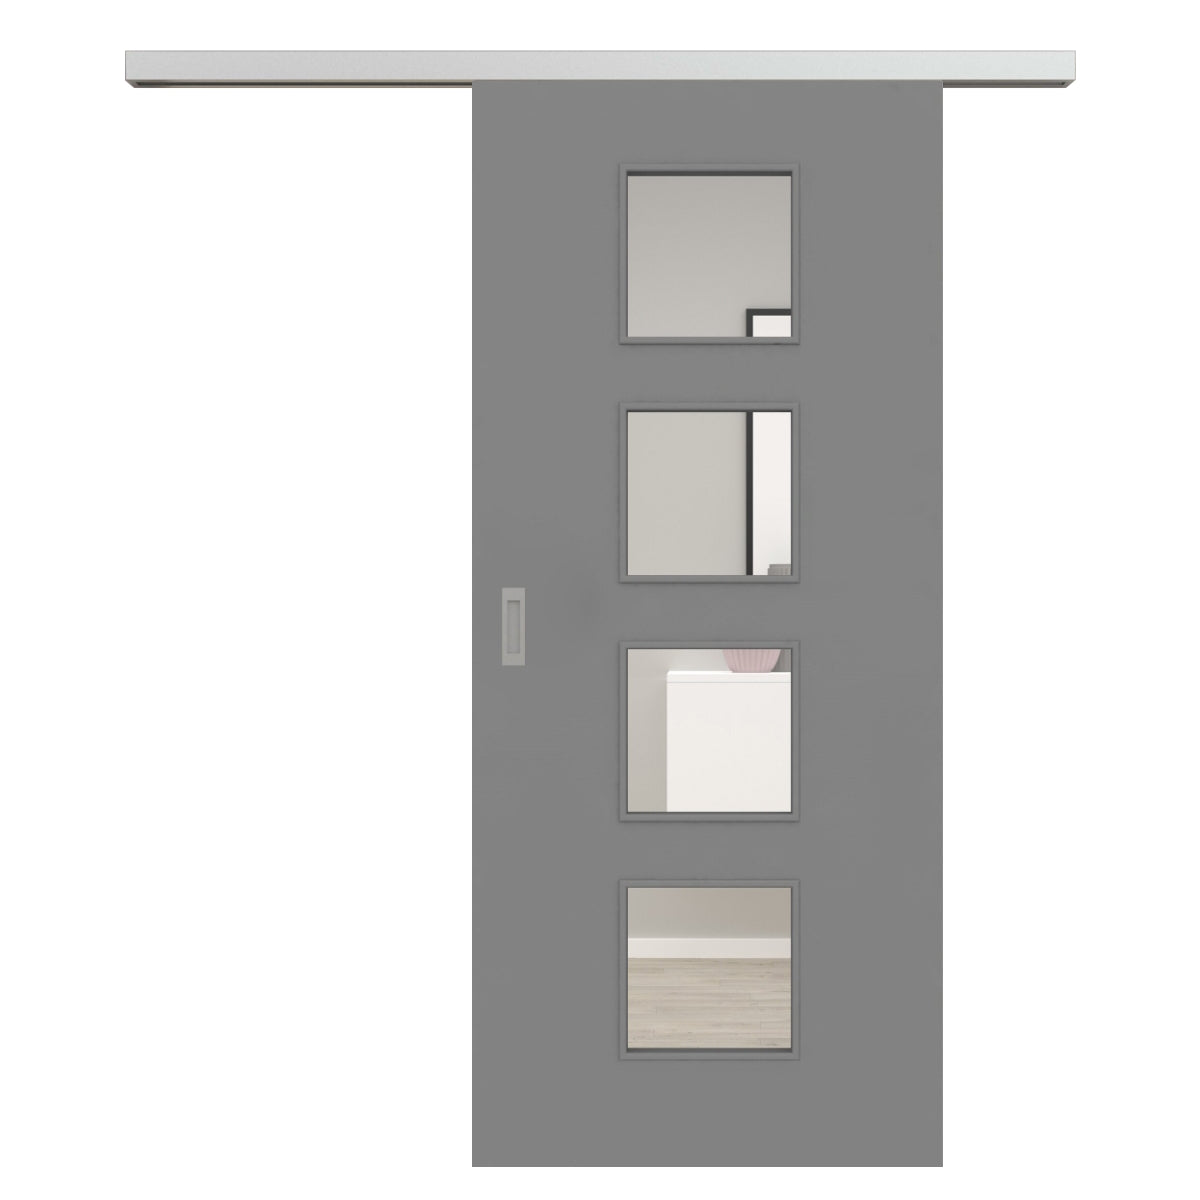 Schiebetür für Set mit Edelstahllaufkasten mit Lichtausschnitt grau glatt - Modell LA4